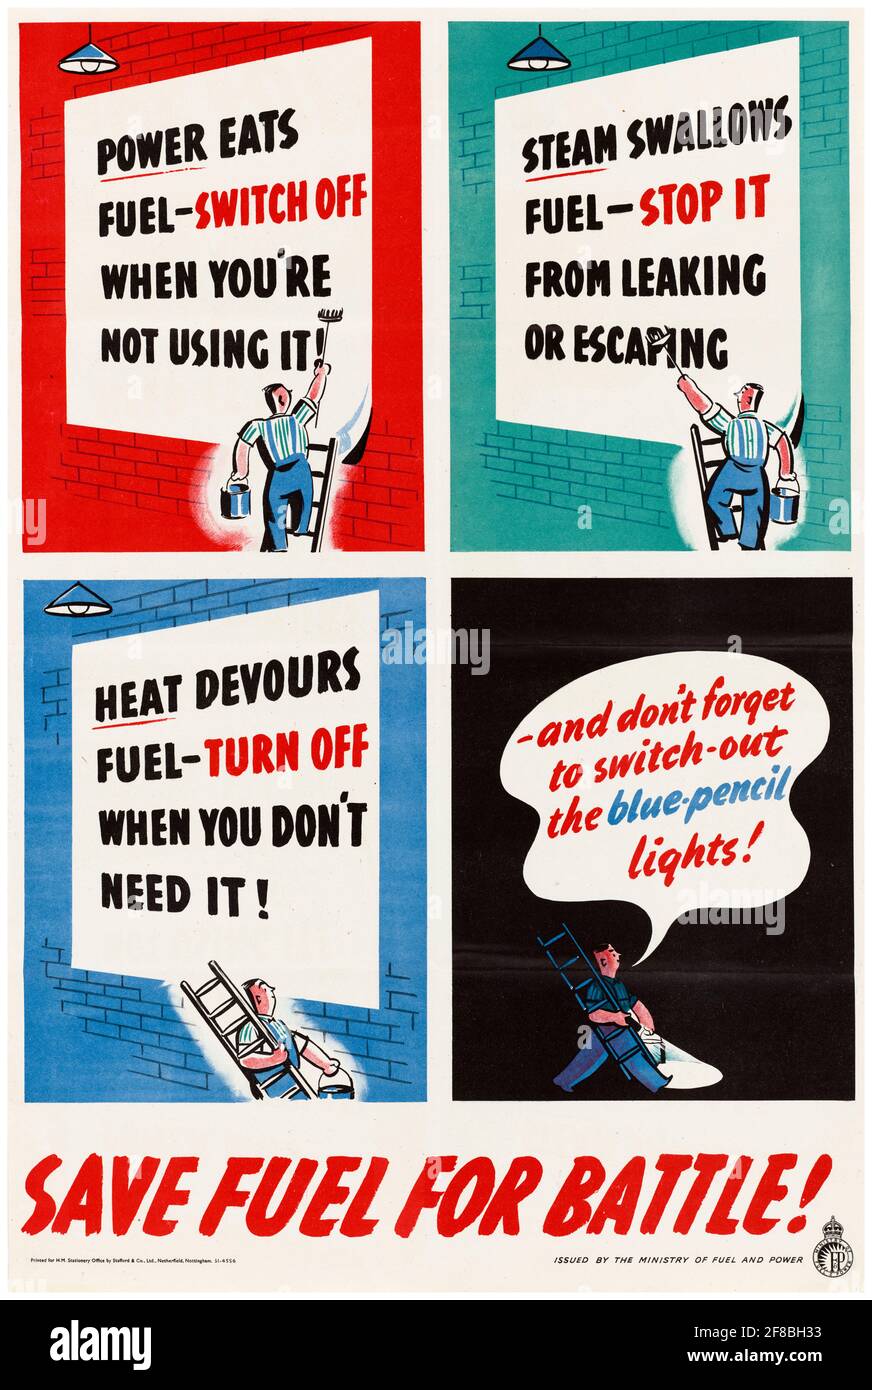 Spegnere, arrestare, spegnere, risparmiare carburante per la battaglia!, poster britannico sulla risparmio di carburante della seconda guerra mondiale, 1942-1945 Foto Stock